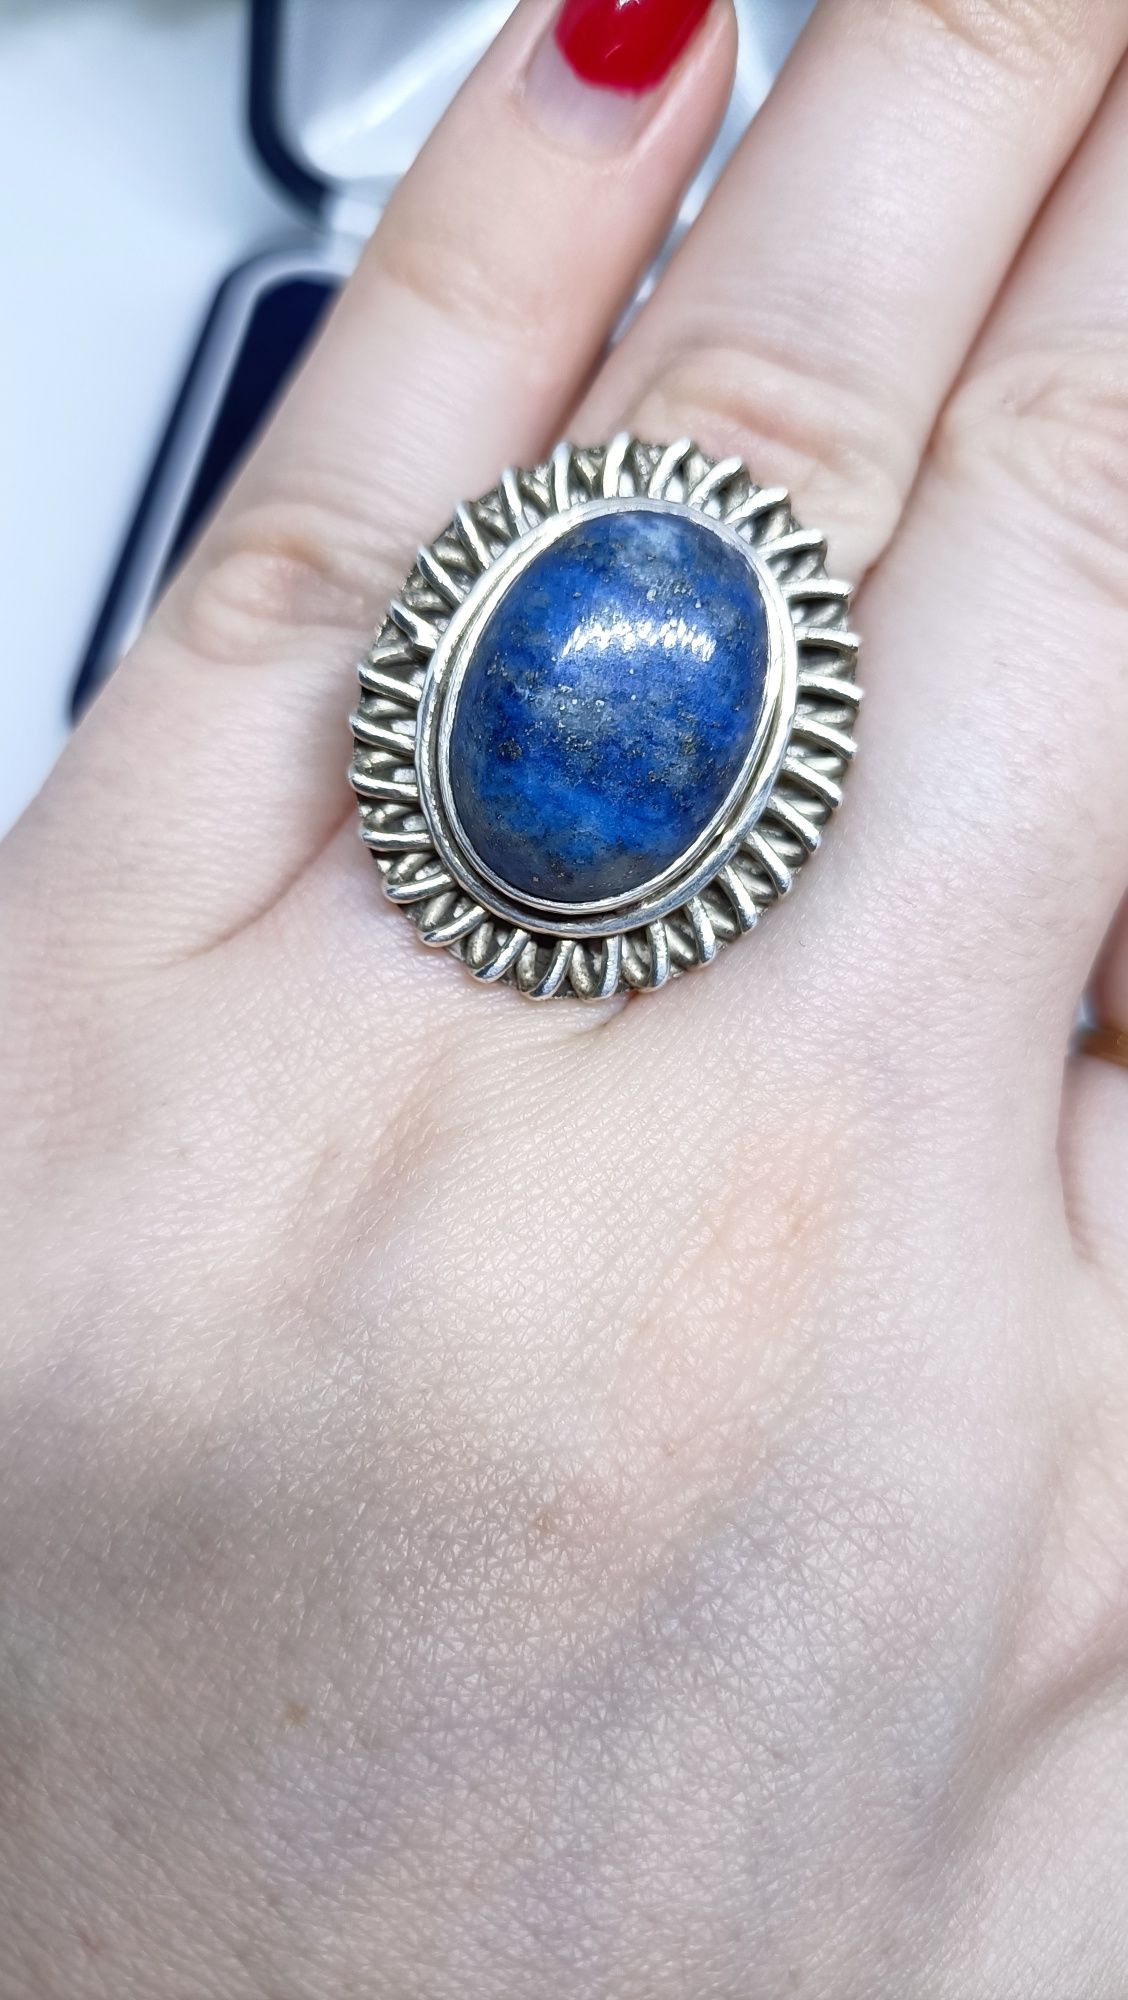 Widoczny pierścionek ze srebra z lapis lazuli, srebro 925